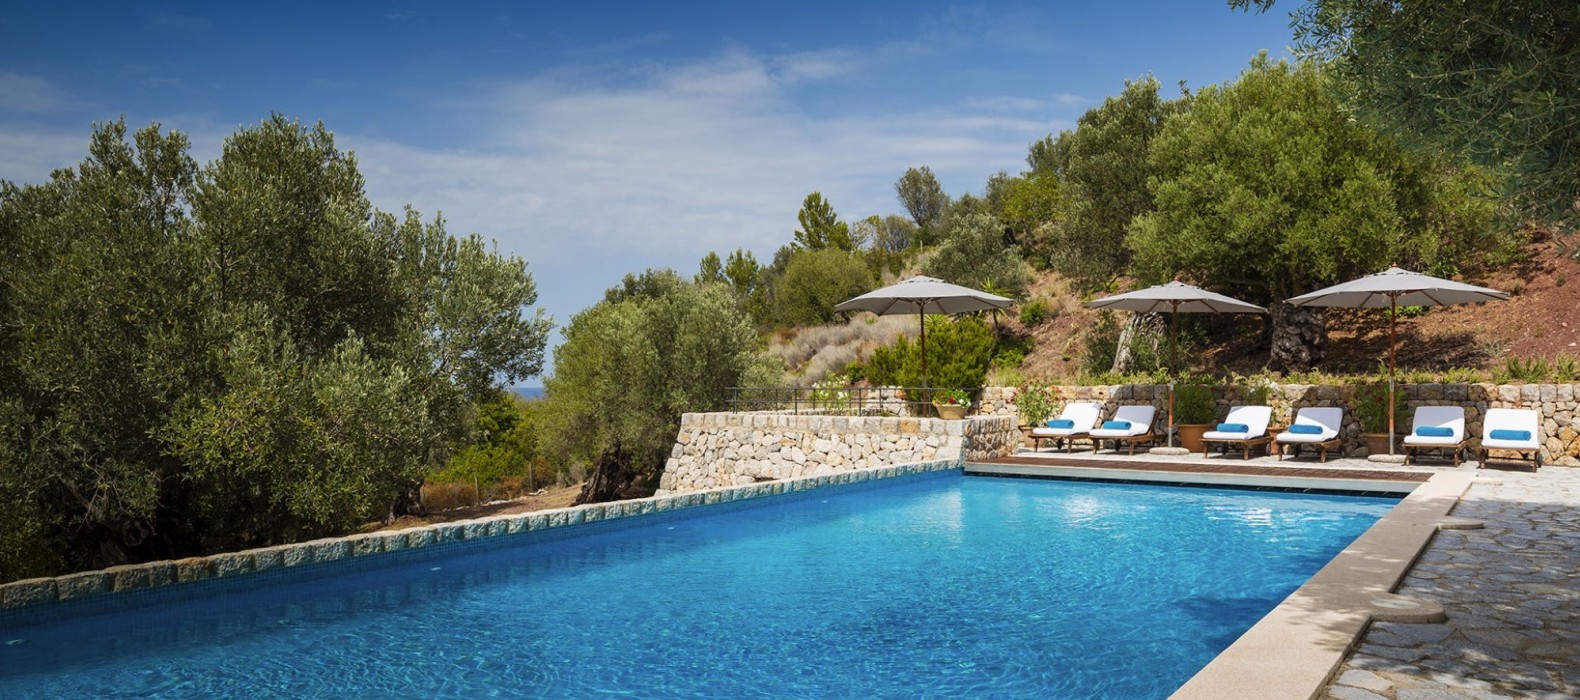 Exterior pool area of Villa Can Jungle in Mallorca